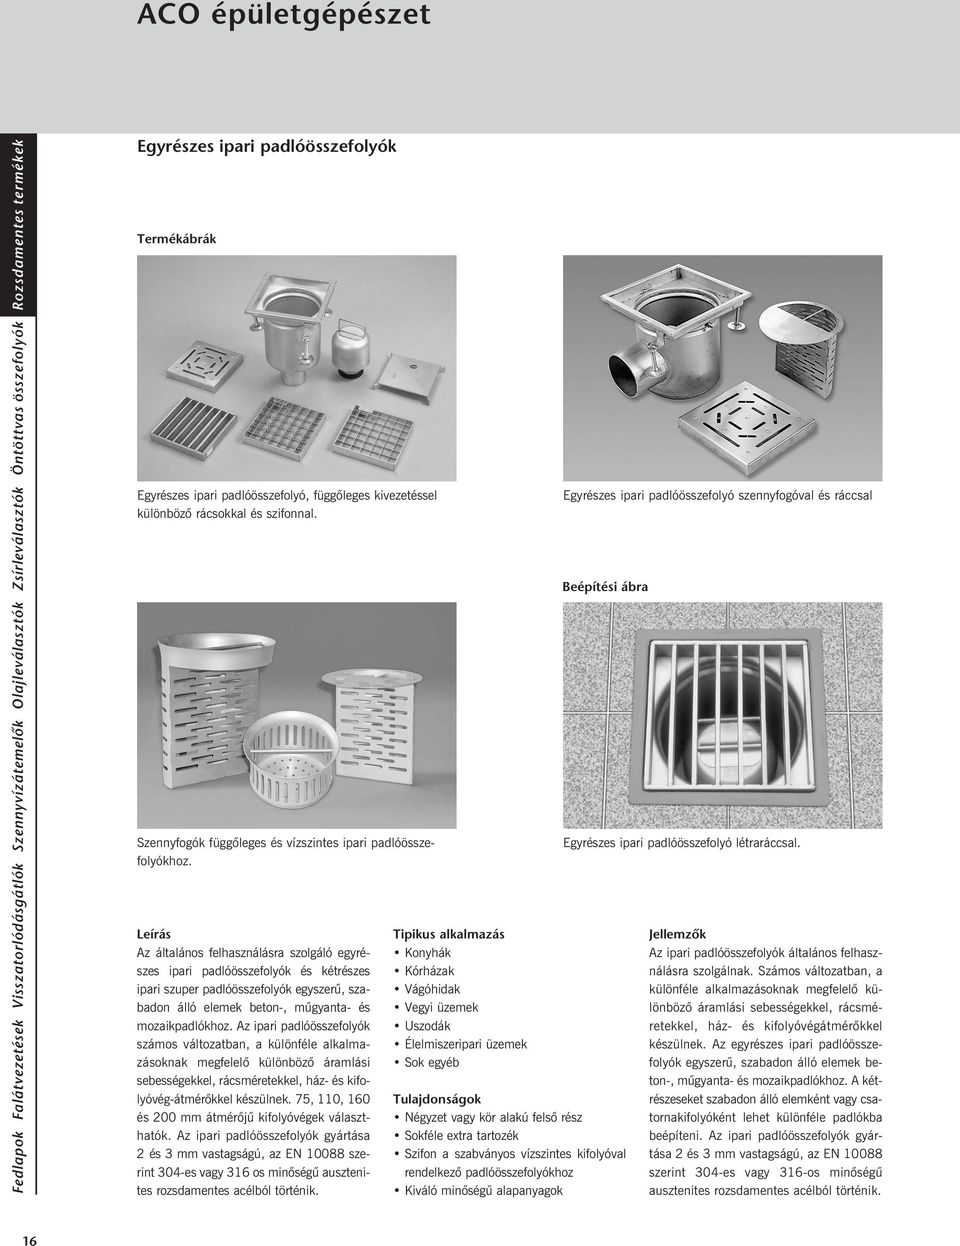 ACO épületgépészet Rozsdamentes termékek - PDF Ingyenes letöltés